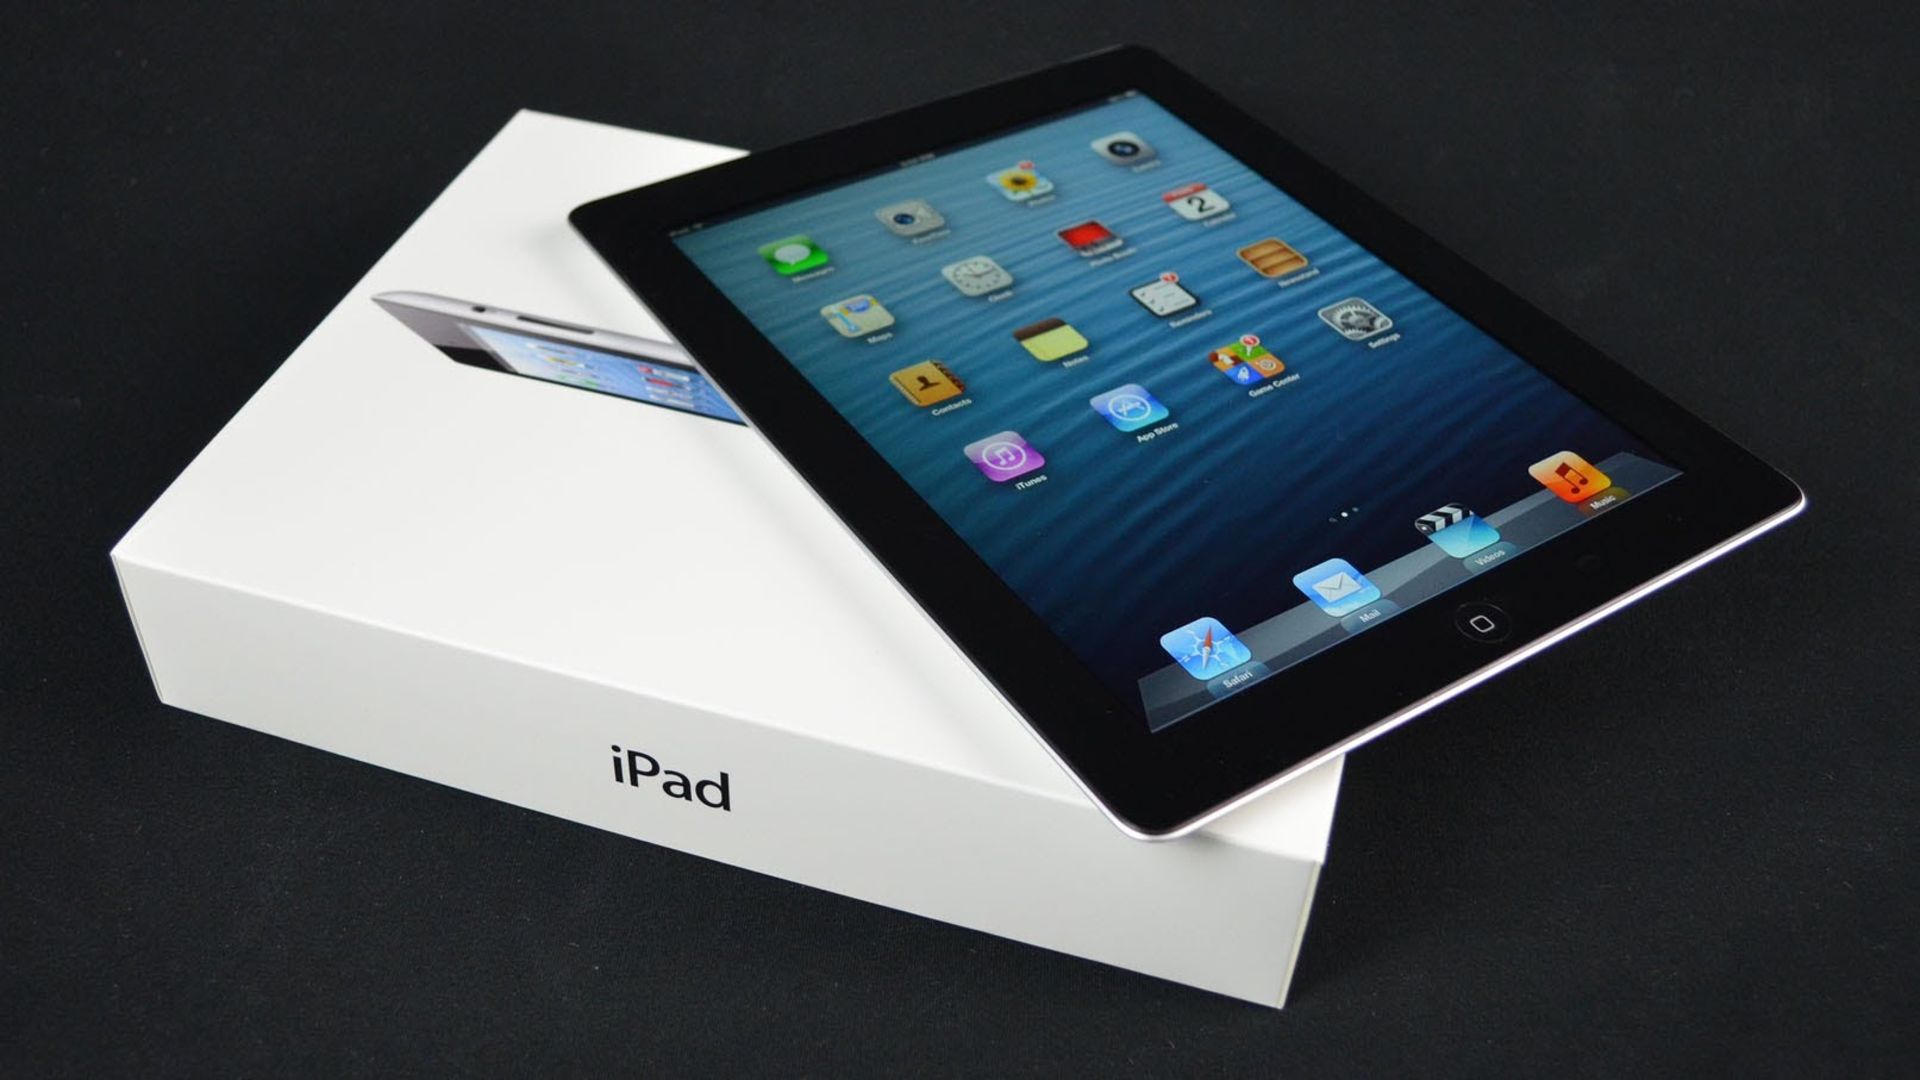 V Grade B Apple iPad 4 16GB - Black - Wi-Fi - Unit Only